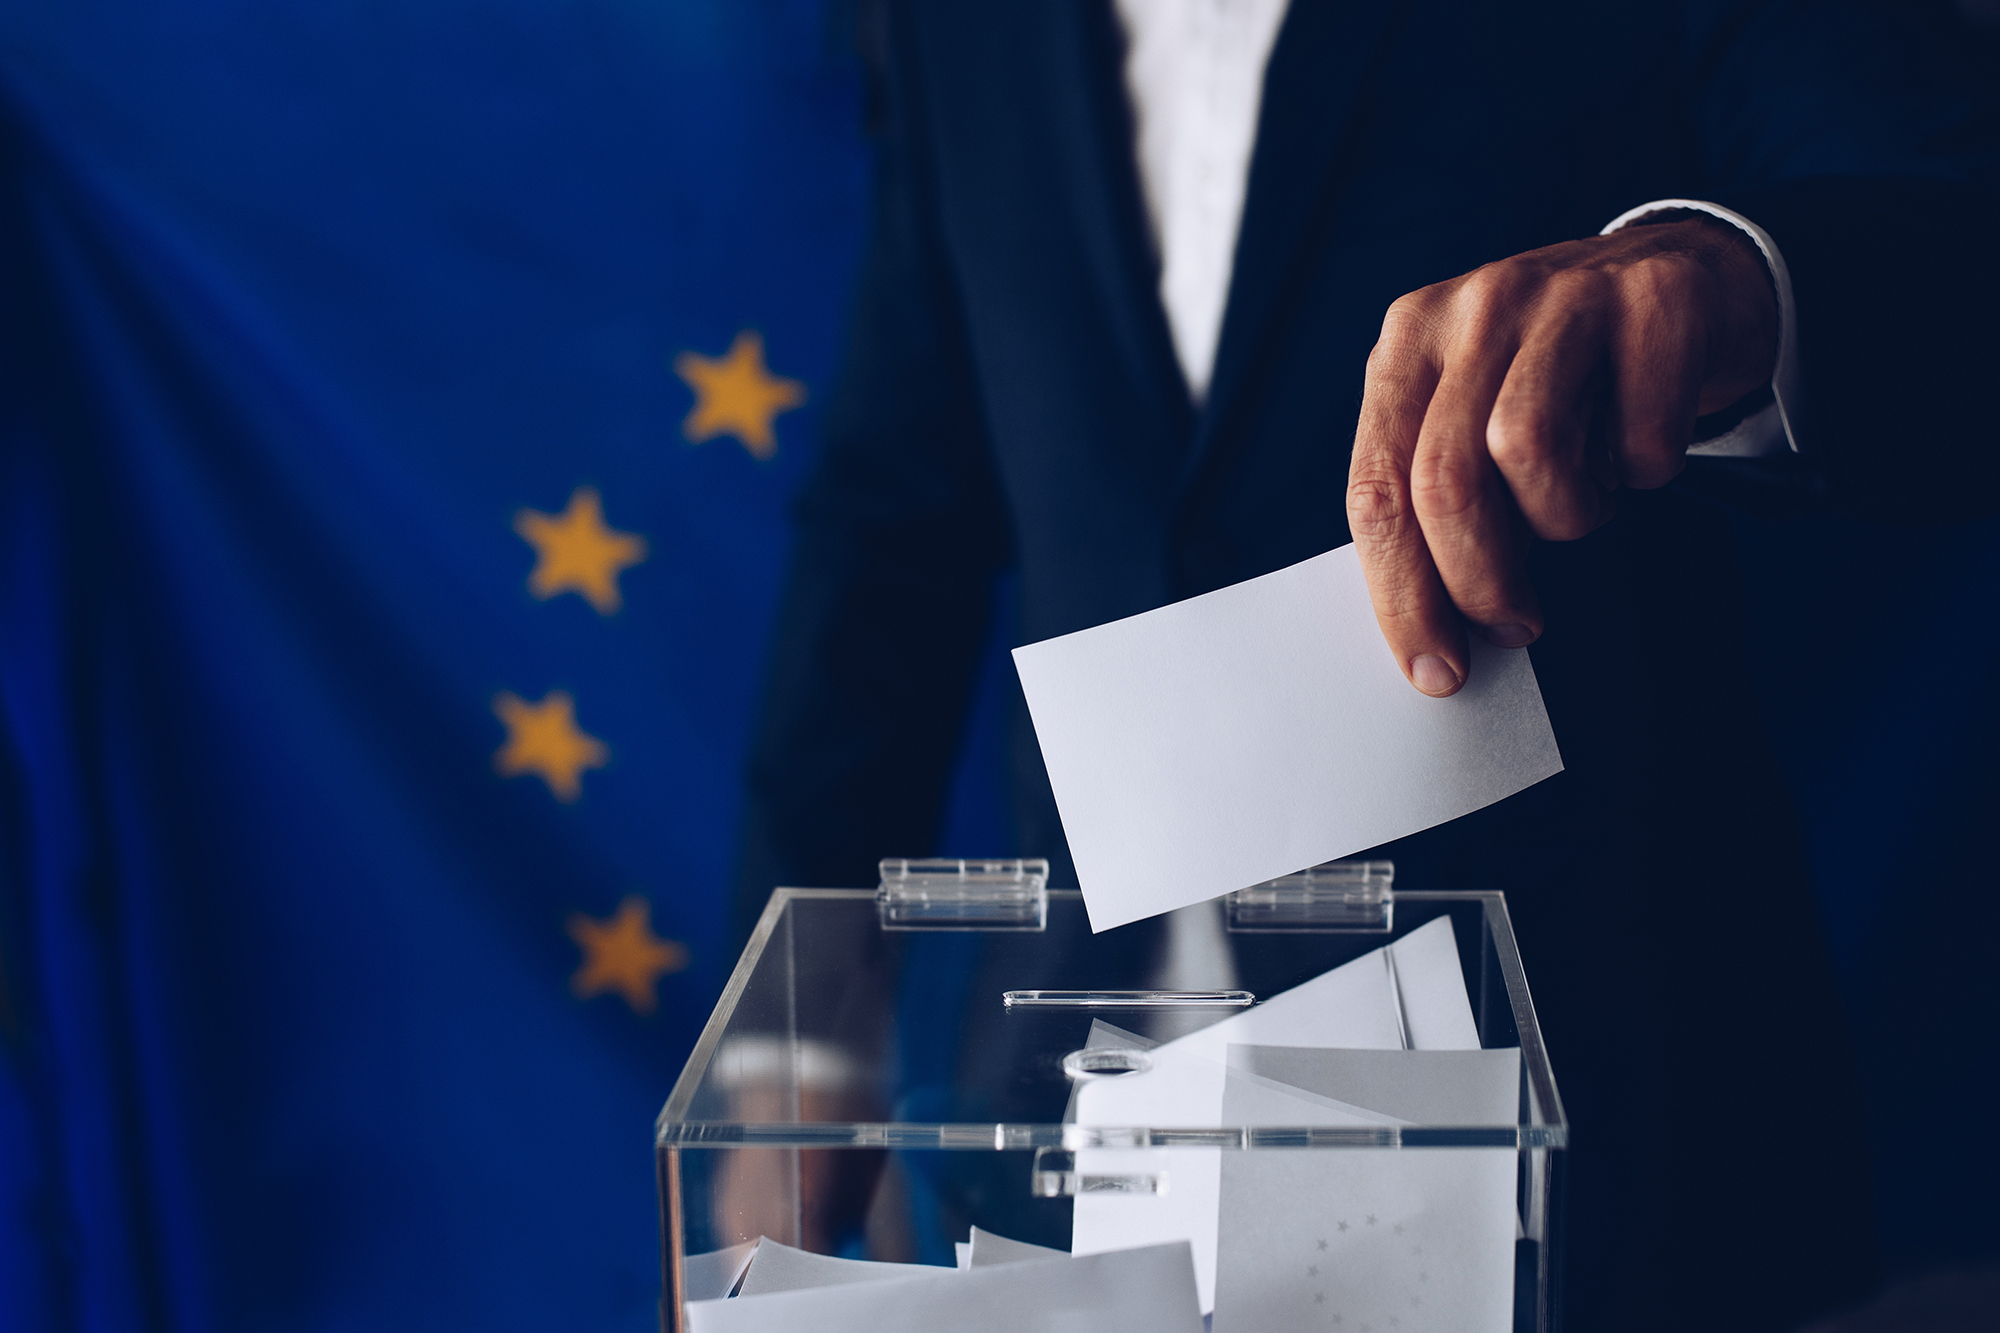 Mann steckt Zettel in Wahlurne, im Hintergrund die Europaflagge